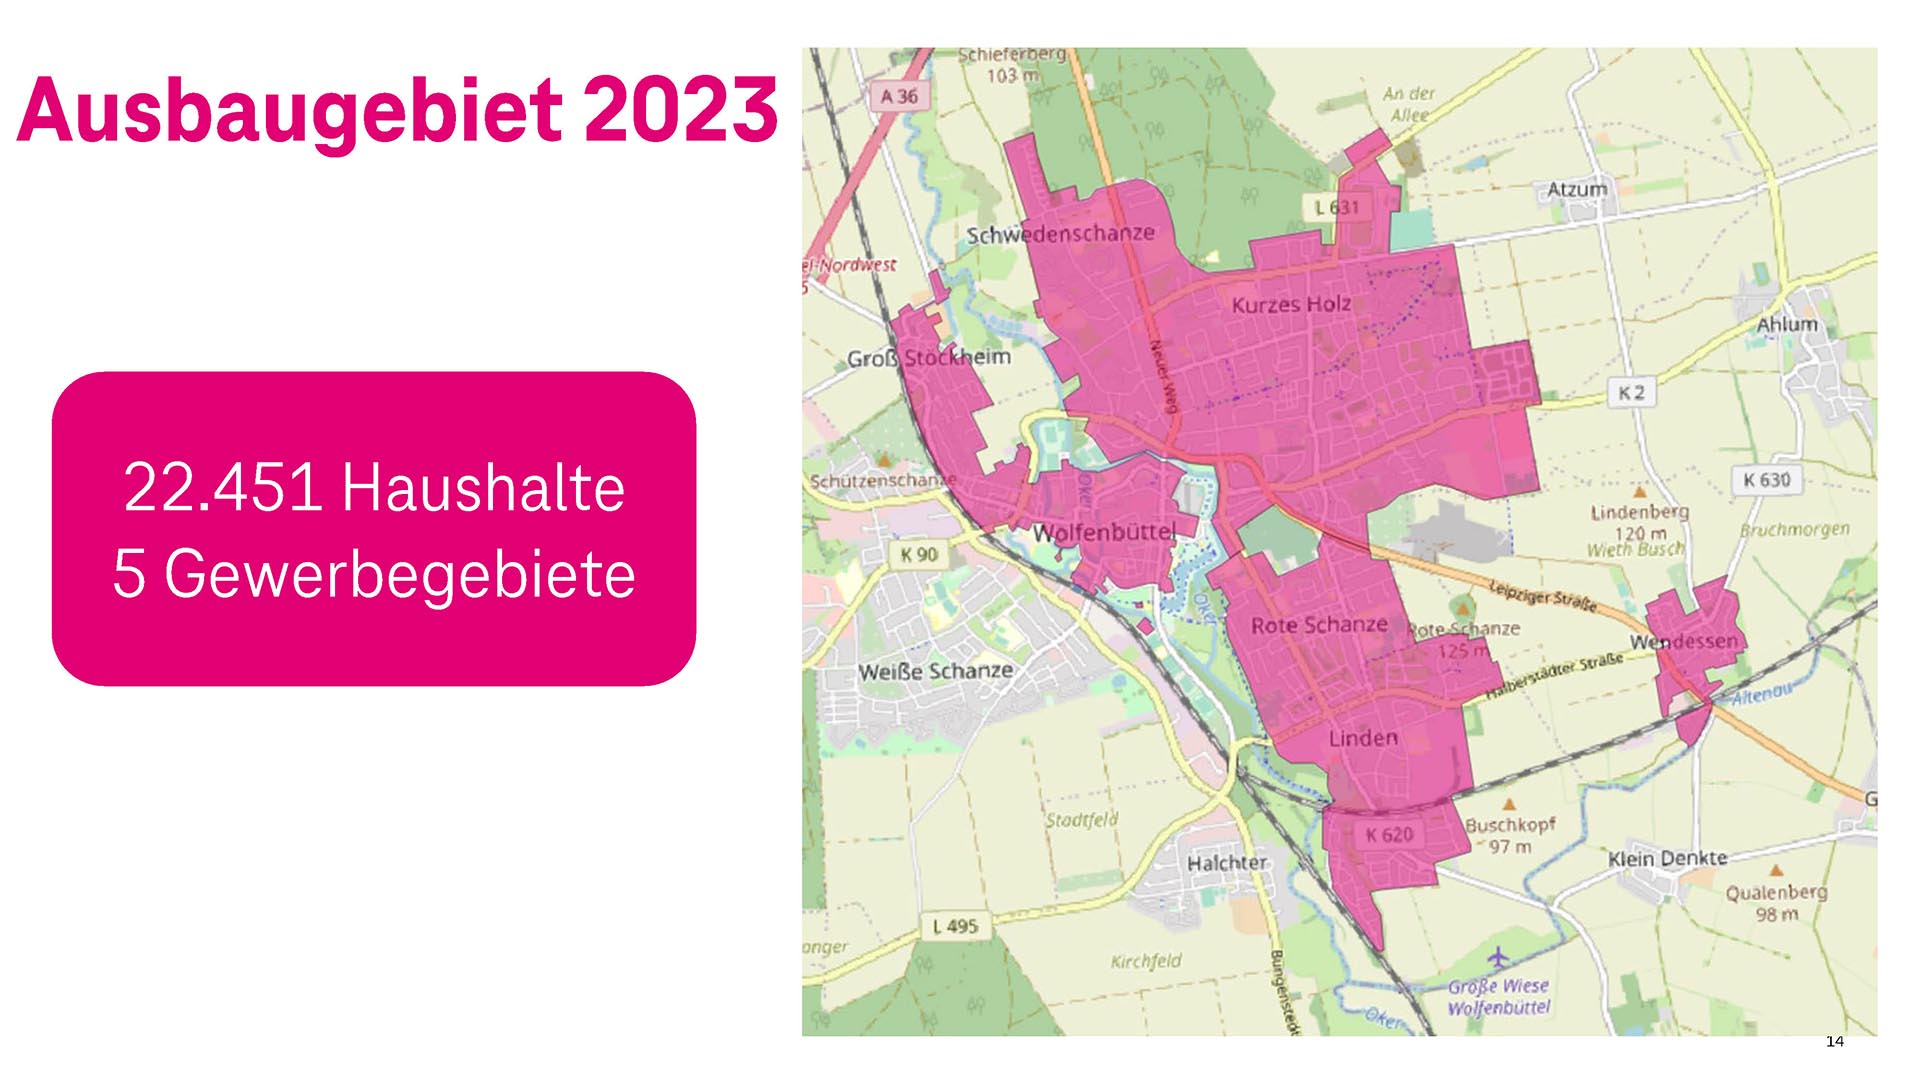 Landkarte von Wolfenbüttel und seinen Ortsteilen. In der Farbe Pink sind die Ausbaugebiete der Telekom 2023 markiert.